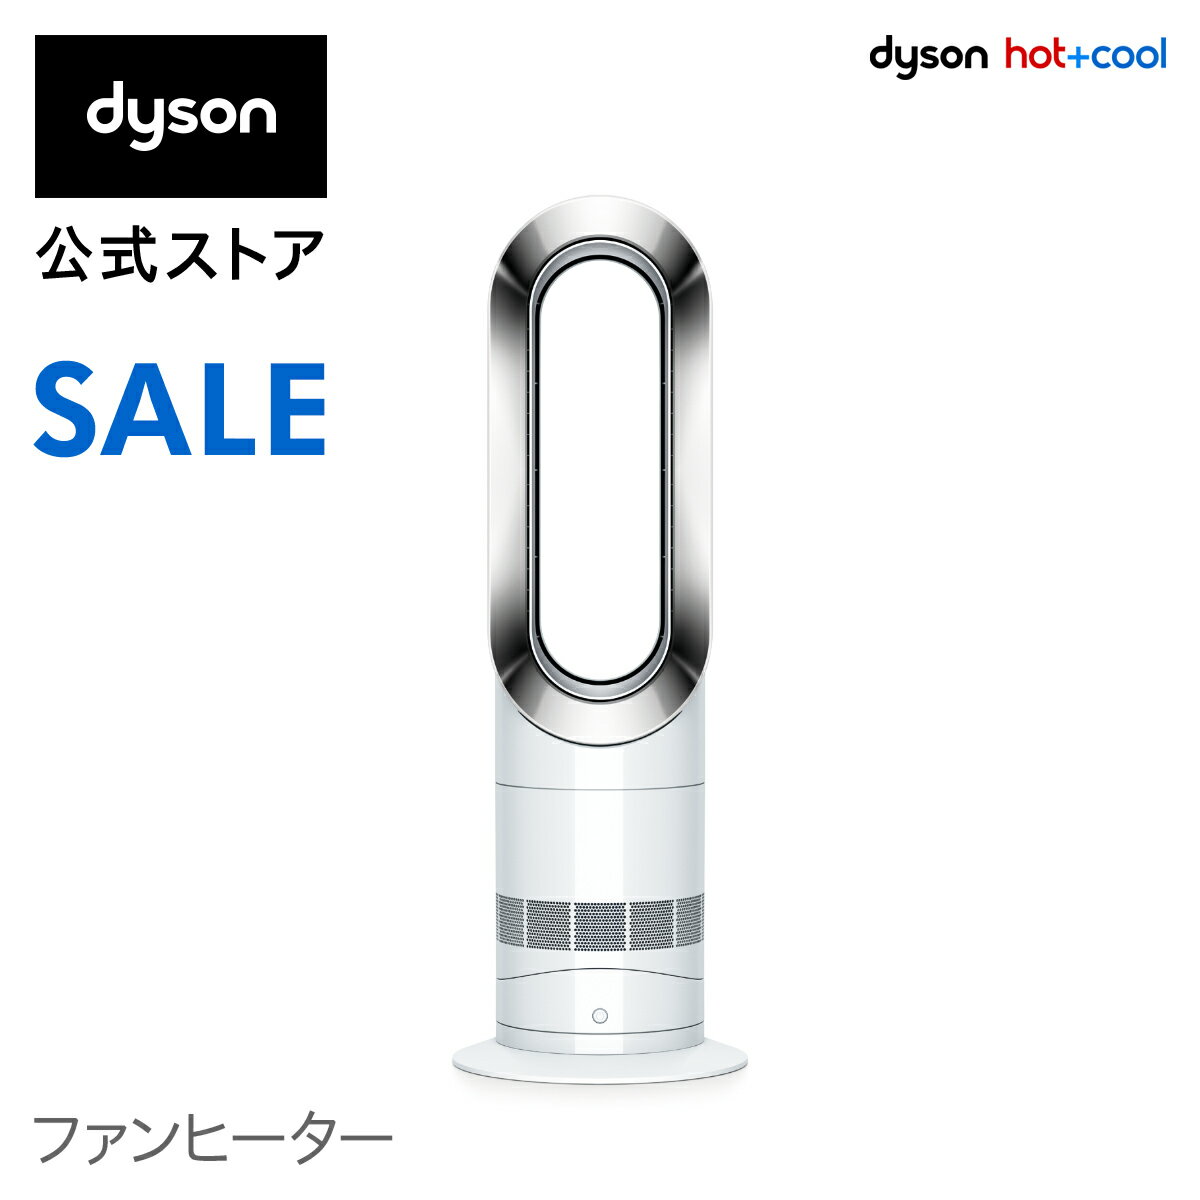 30%OFF【期間限定価格】11日09:59まで！ダイソン Dyson Hot+Cool AM09WN ファンヒーター 扇風機 暖房 ホワイト/ニッケル